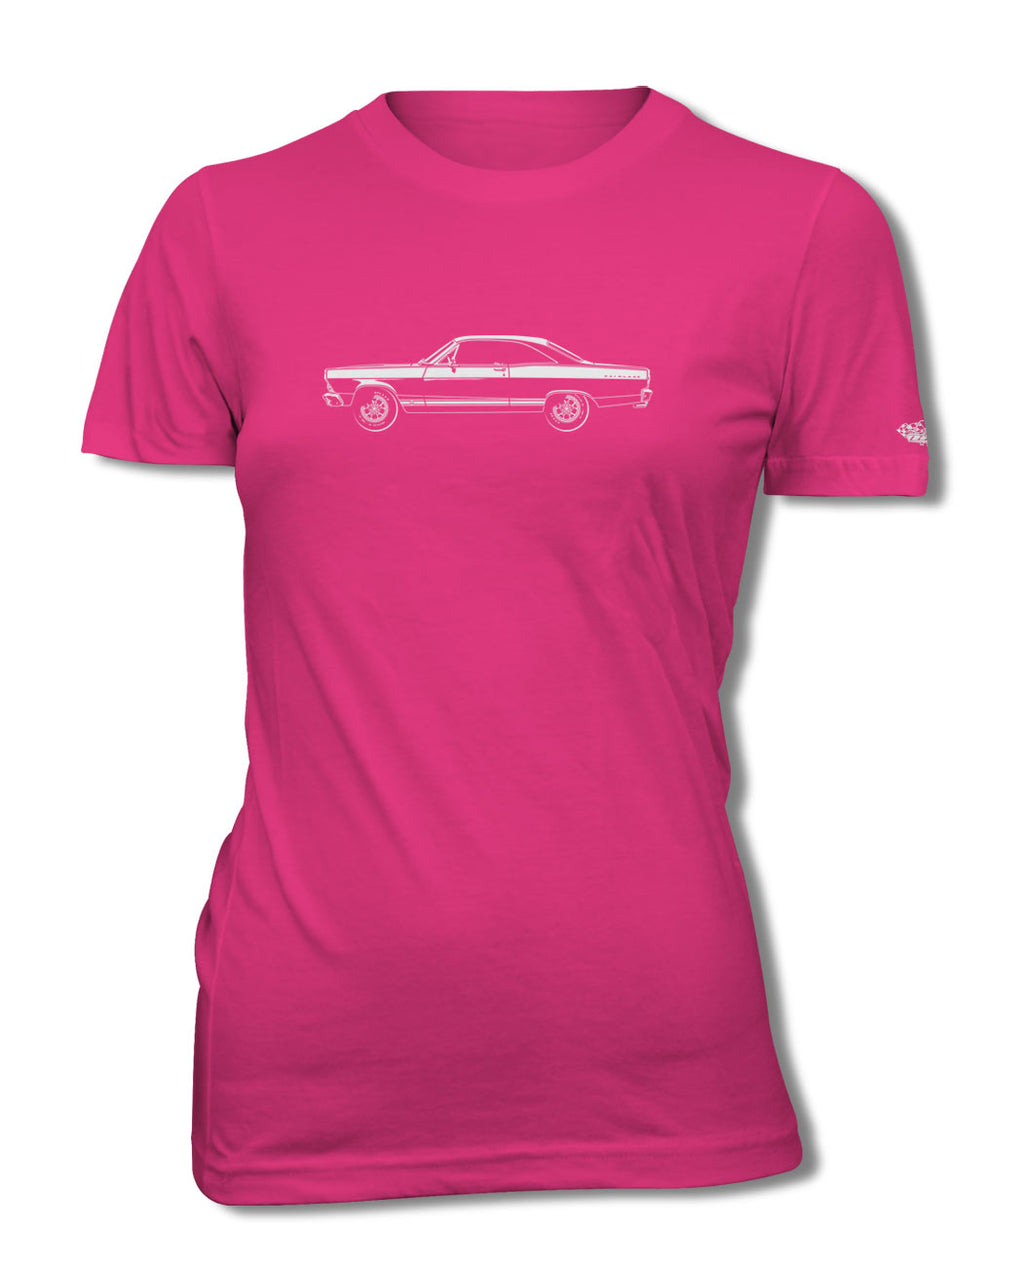 1966 Ford Fairlane GTA Hardtop T-Shirt - Women - Side View